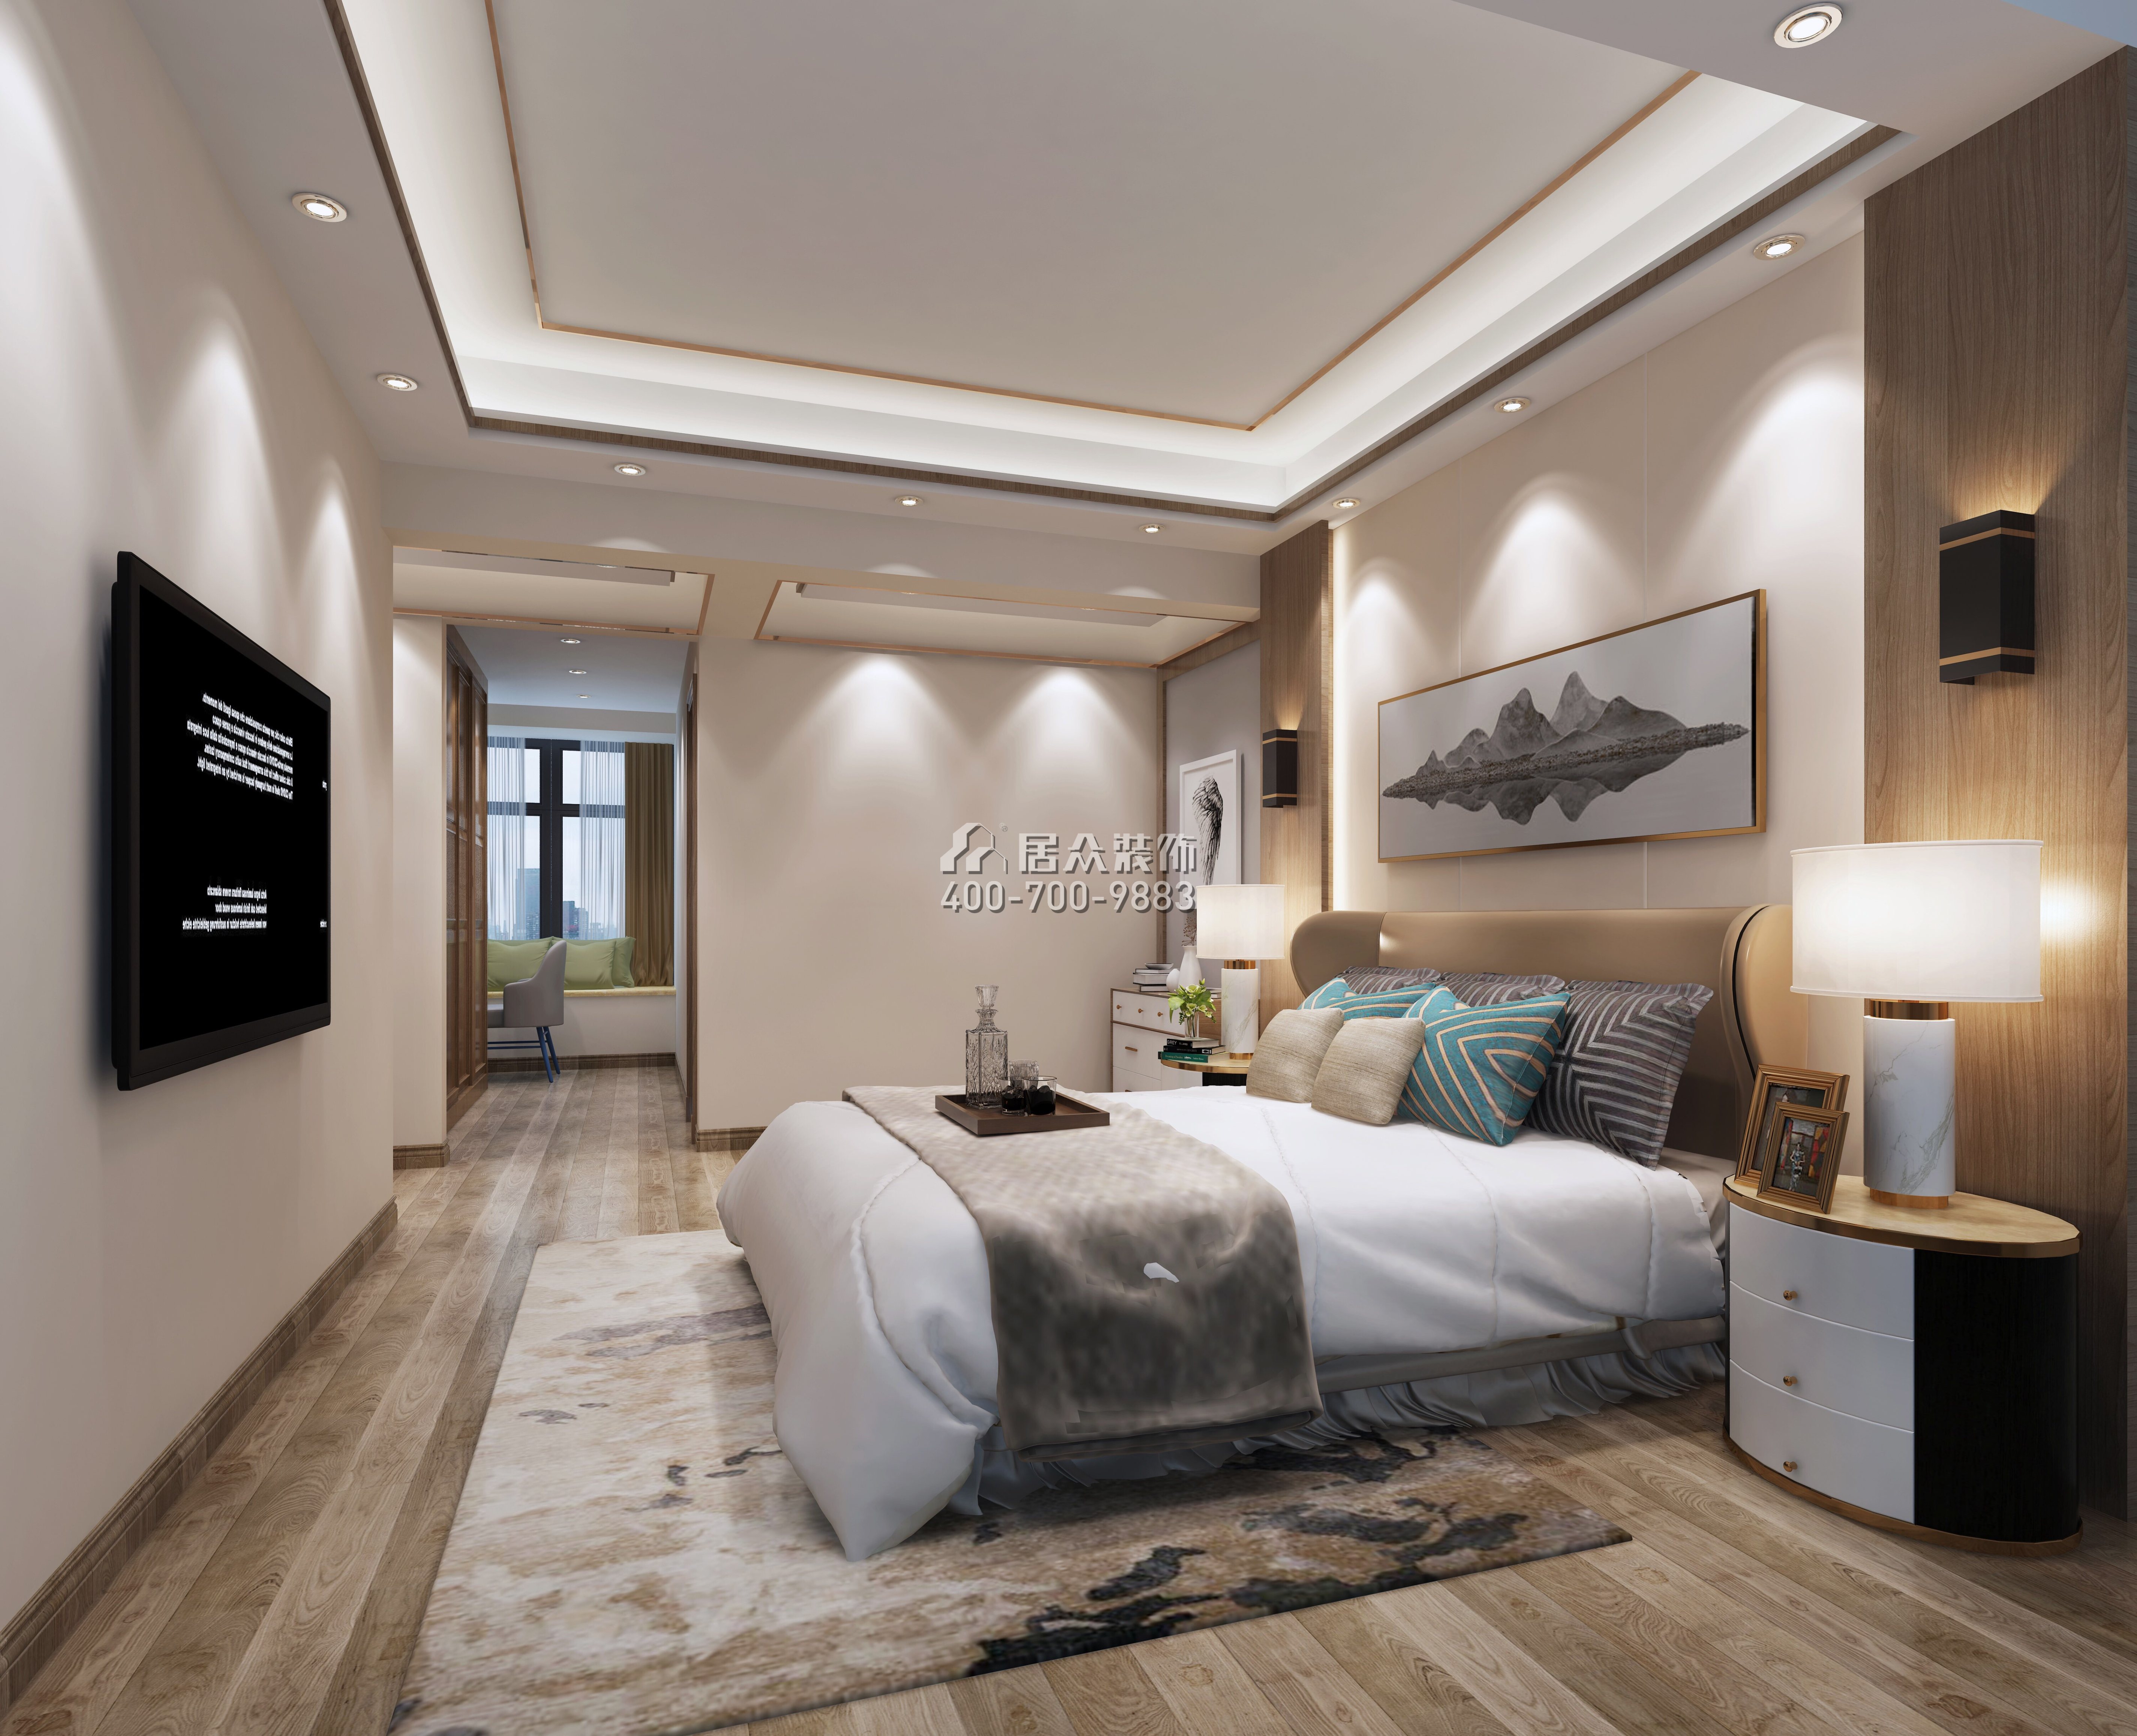 君臨世紀150平方米現代簡約風格平層戶型臥室裝修效果圖